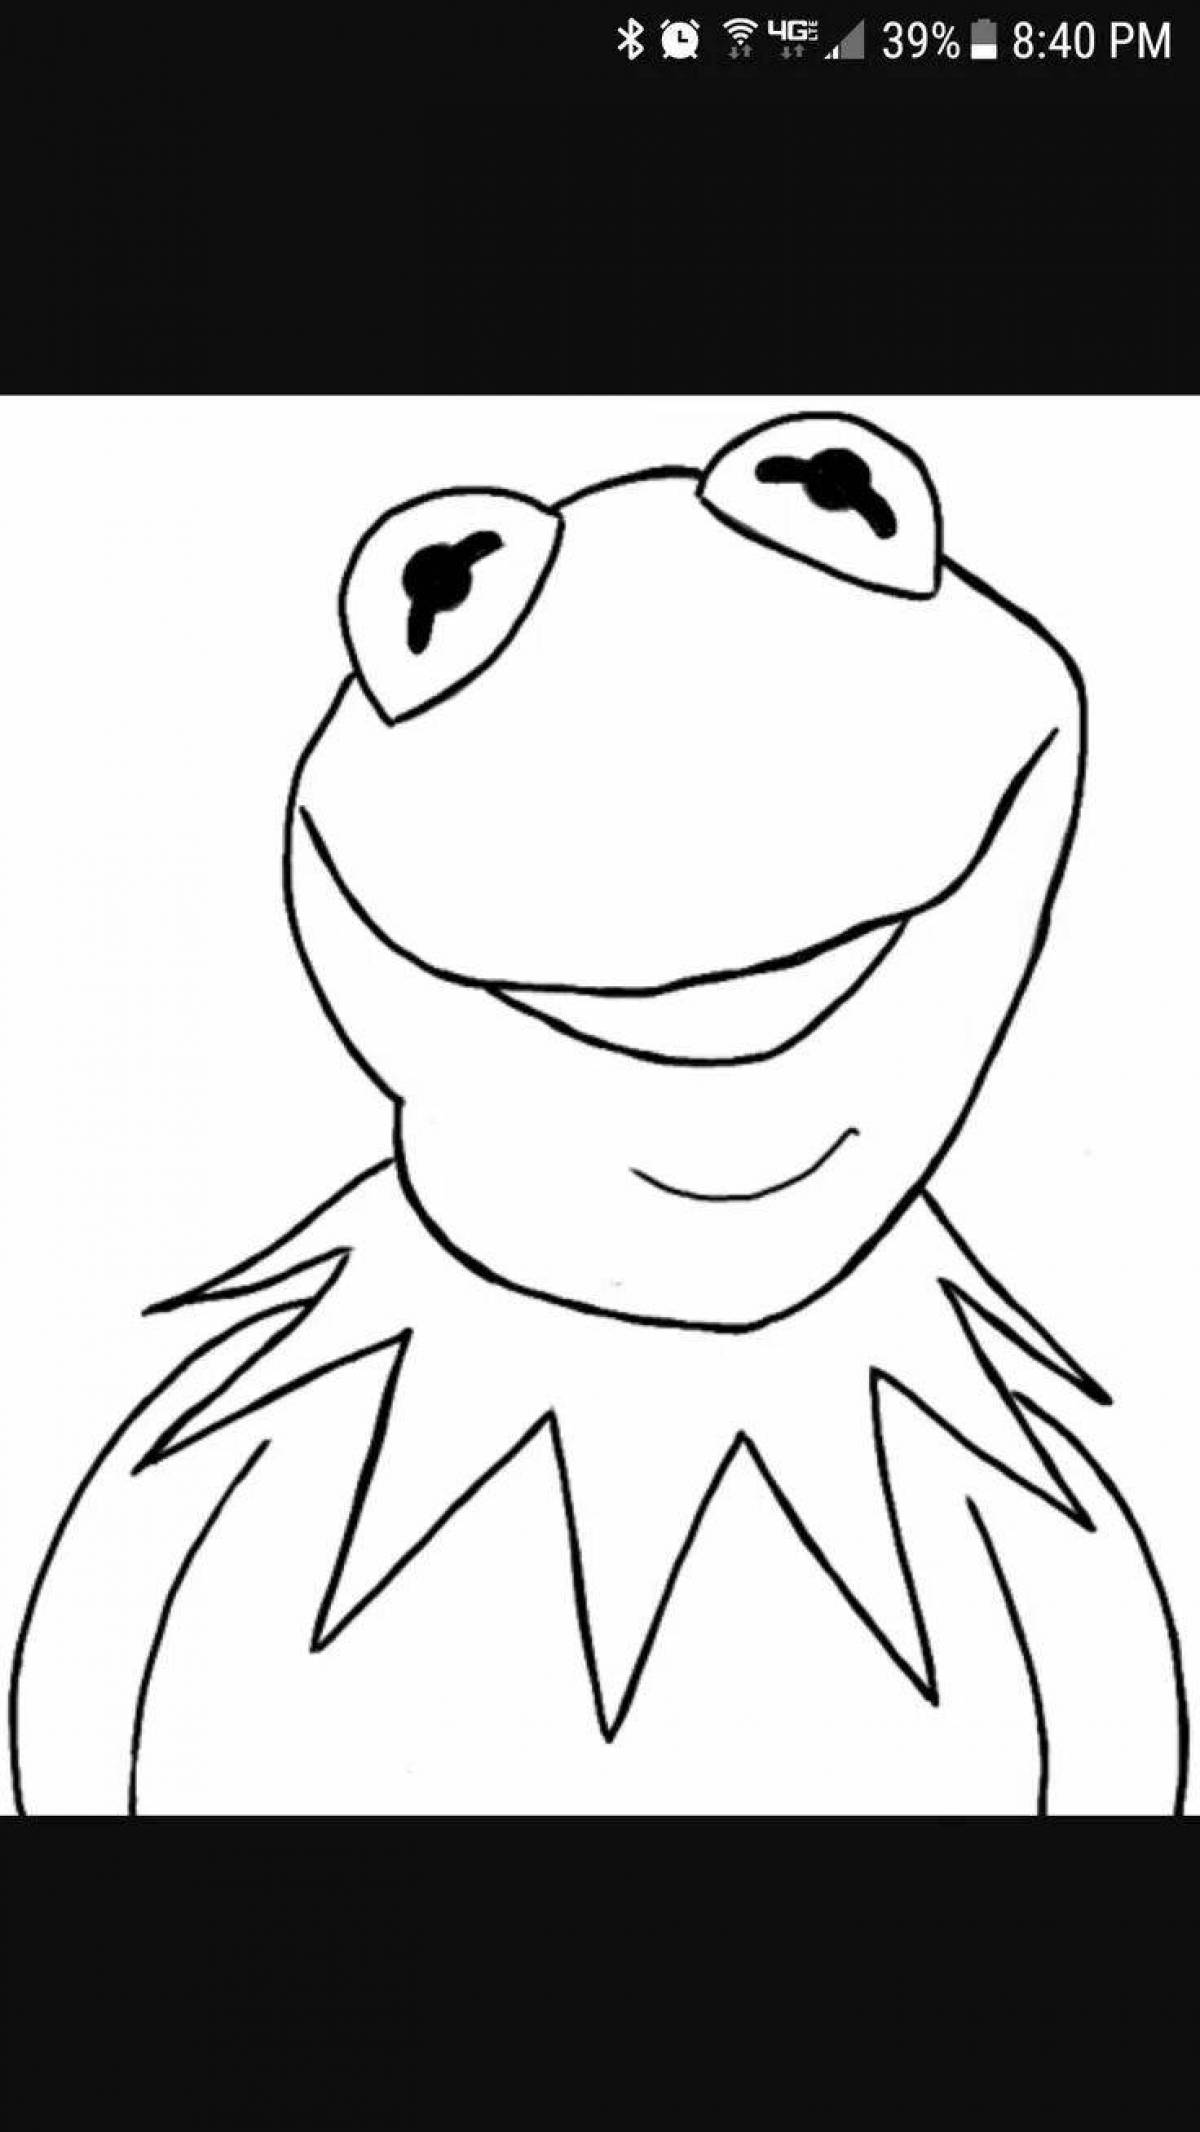 Joyful frog tik tok coloring book